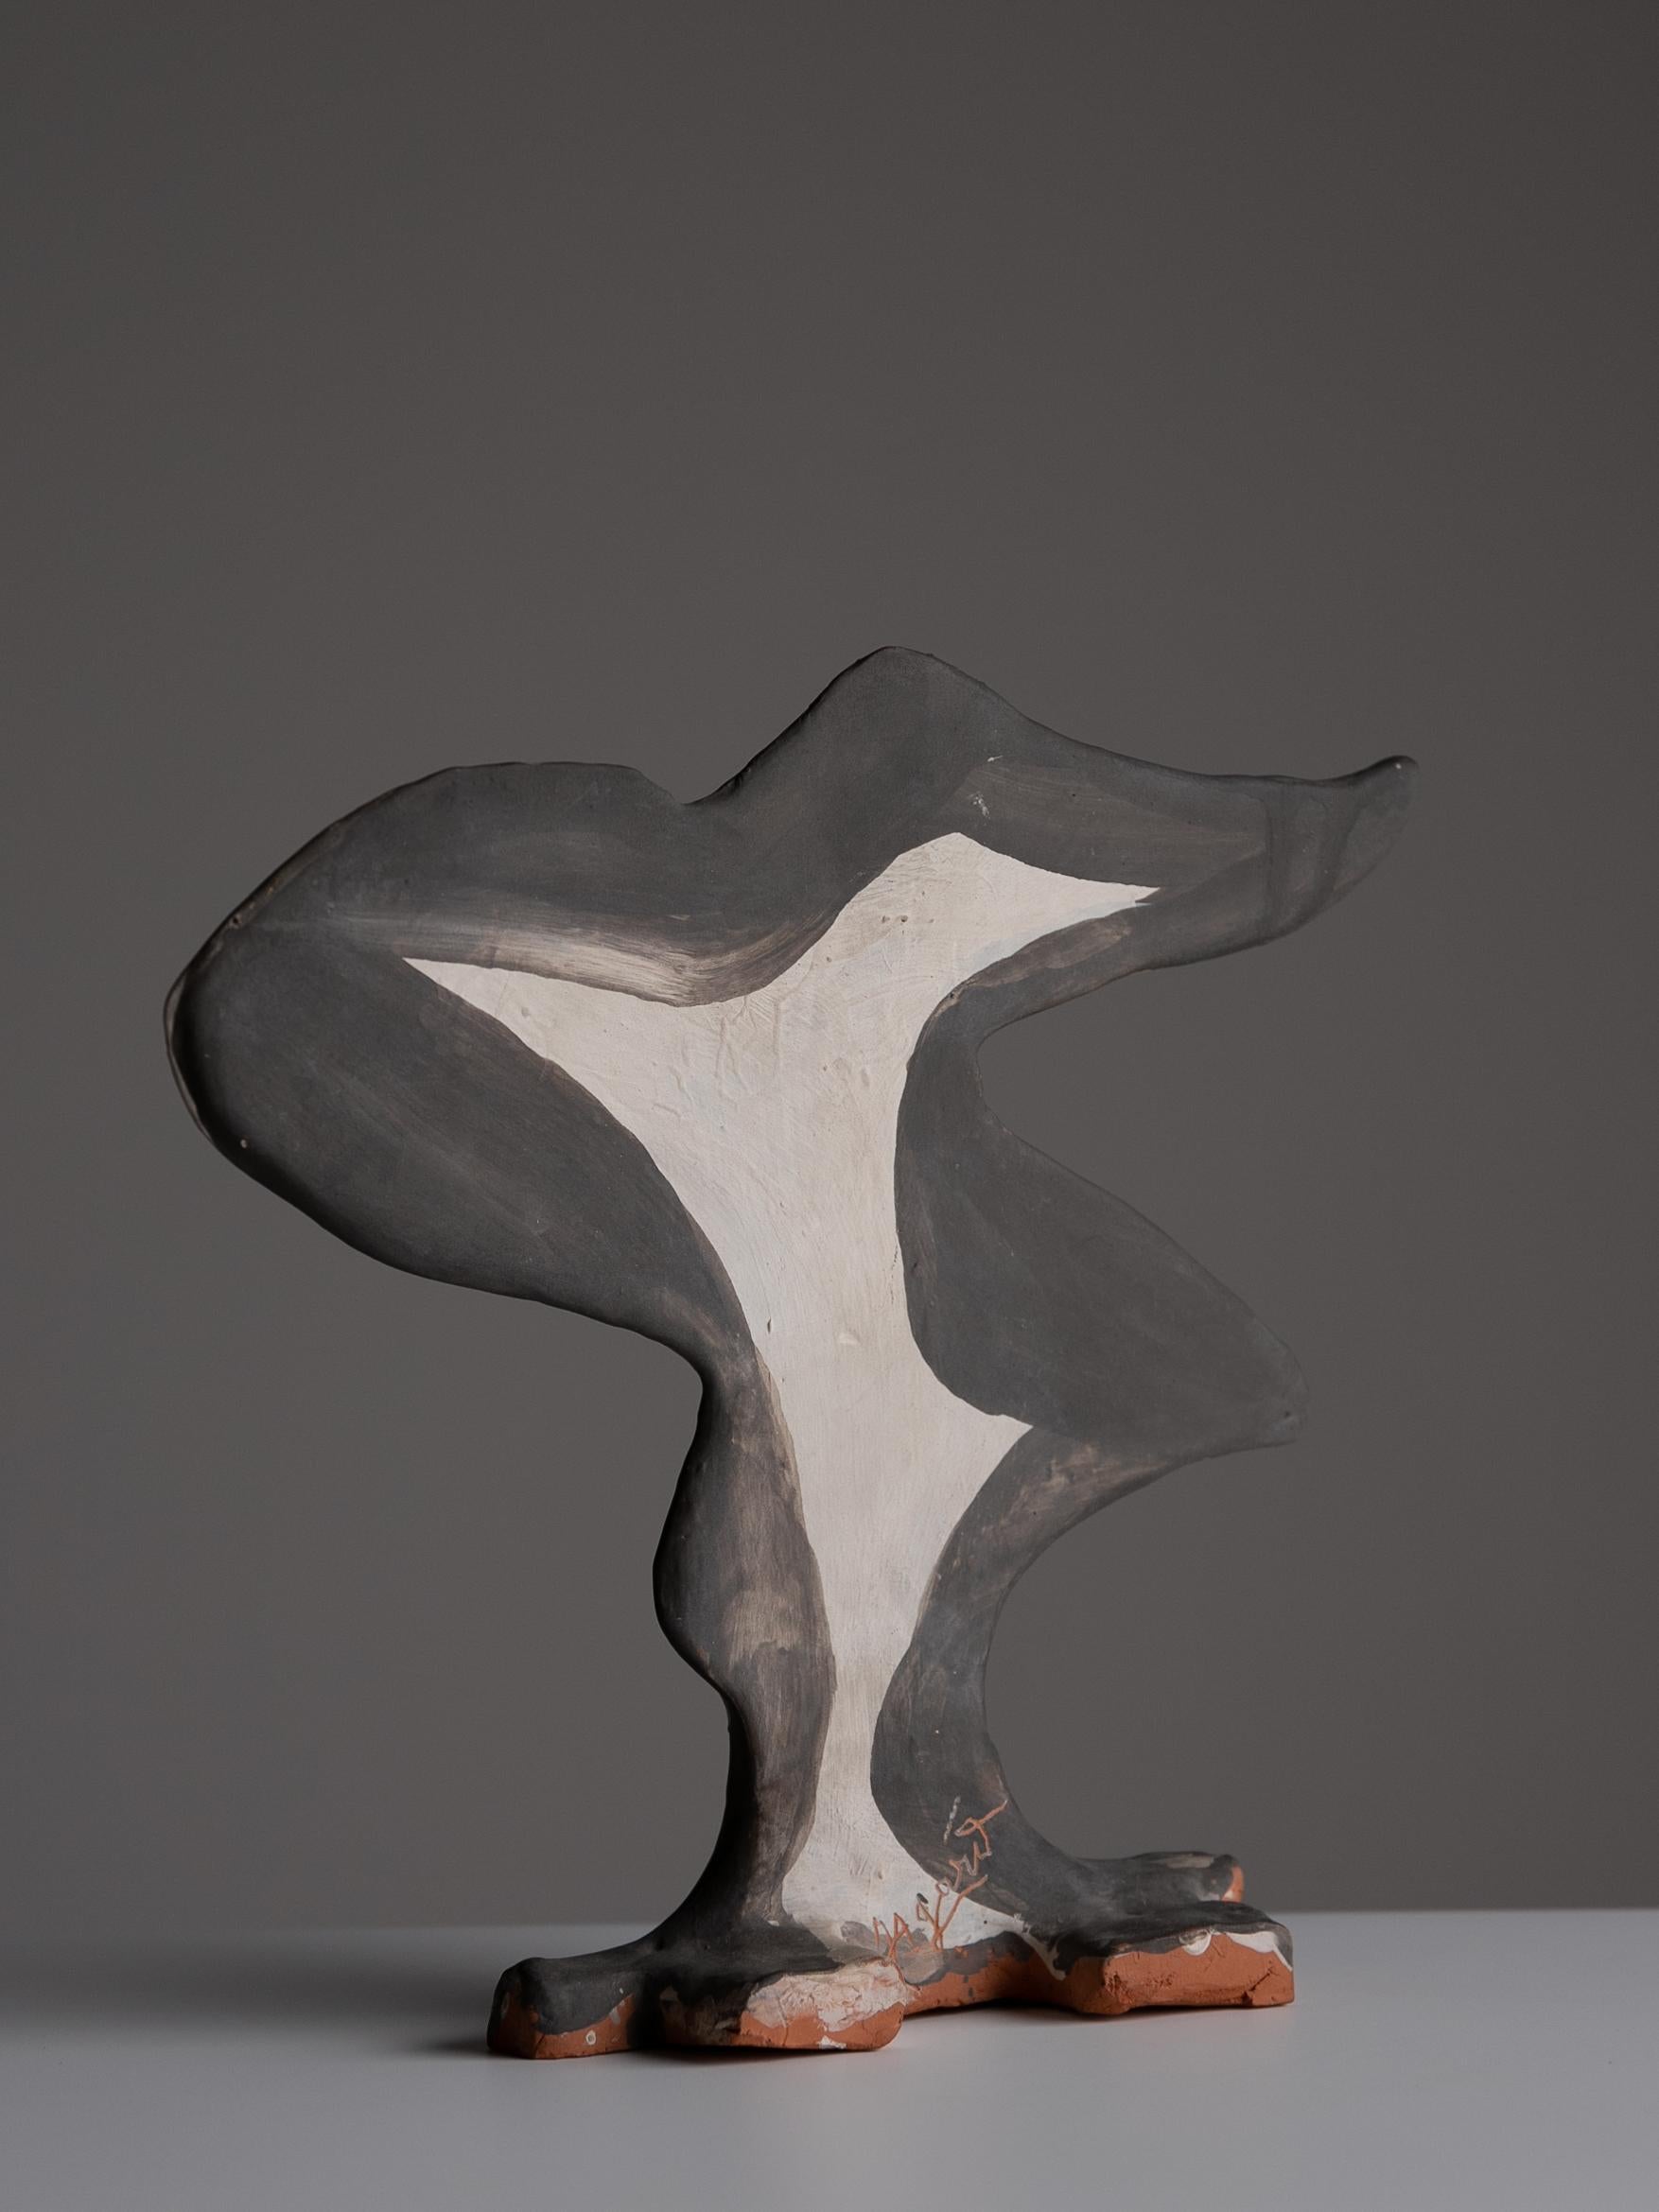 Abstrakte Skulptur von Jules Agard

Handbemalte abstrakte Skulptur von Jules Agard aus Valaris-Terrakotta aus den 1950er Jahren.

